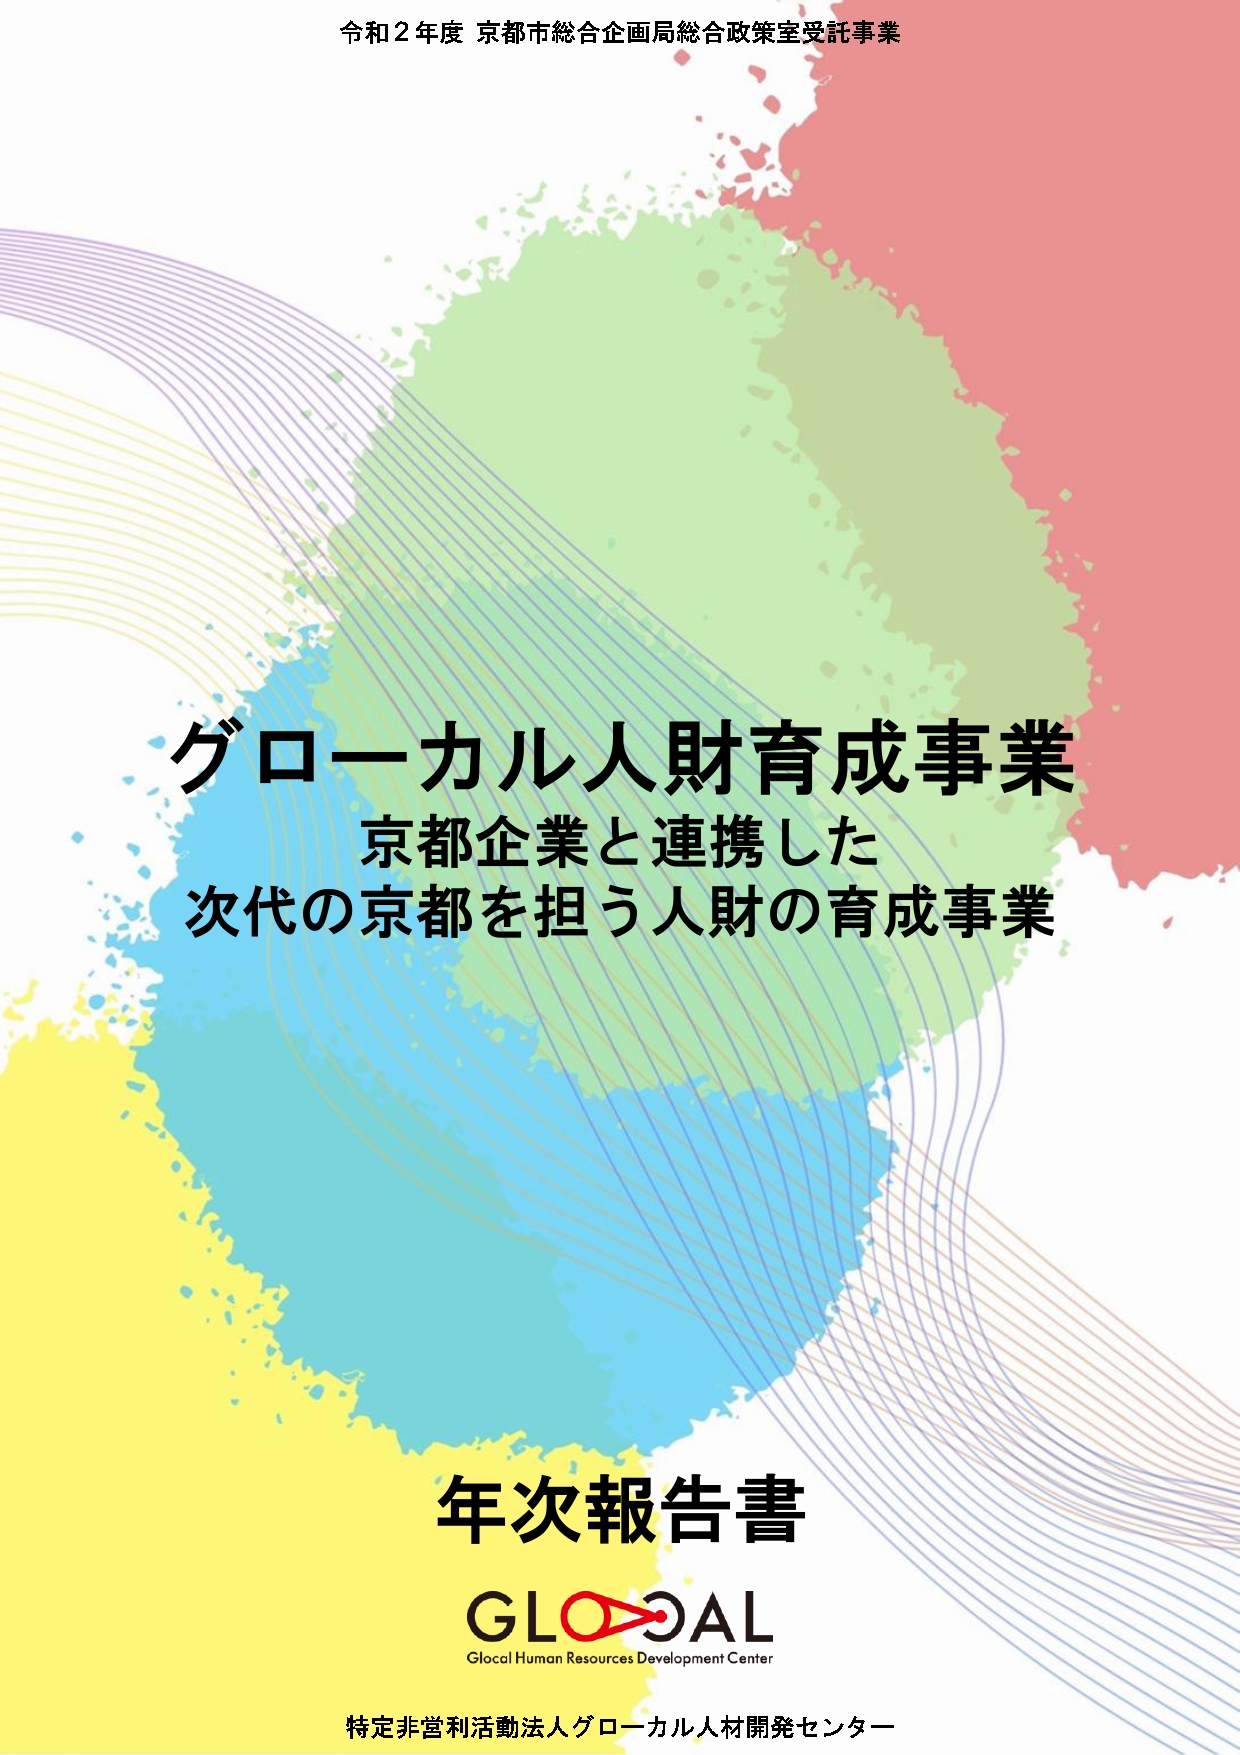 令和2年度京都市委託事業「京都企業と連携した時代の京都を担う人材の育成事業」報告書